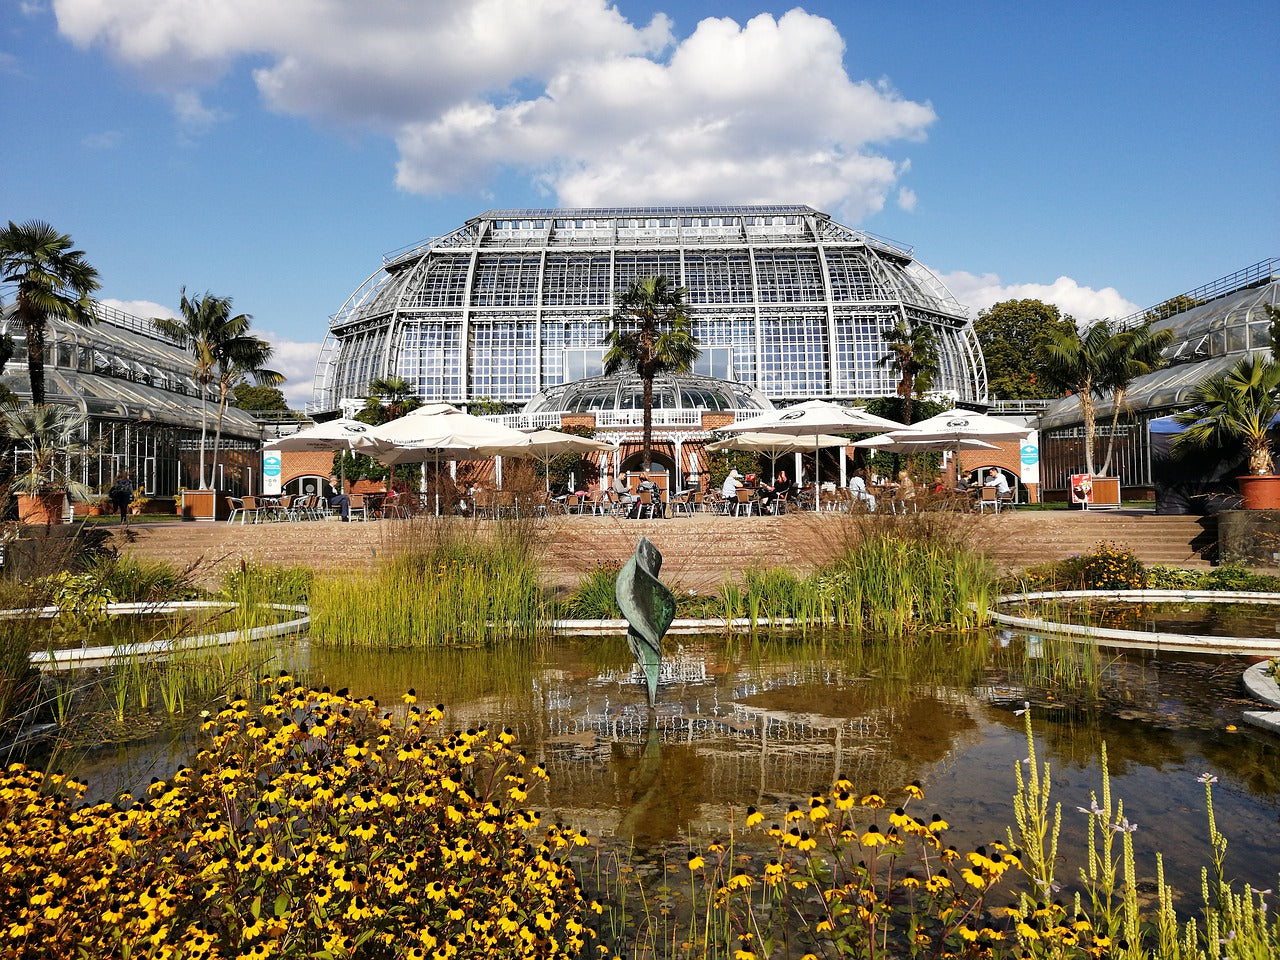 Jardin remarquable d’Europe #12 le jardin botanique de Berlin